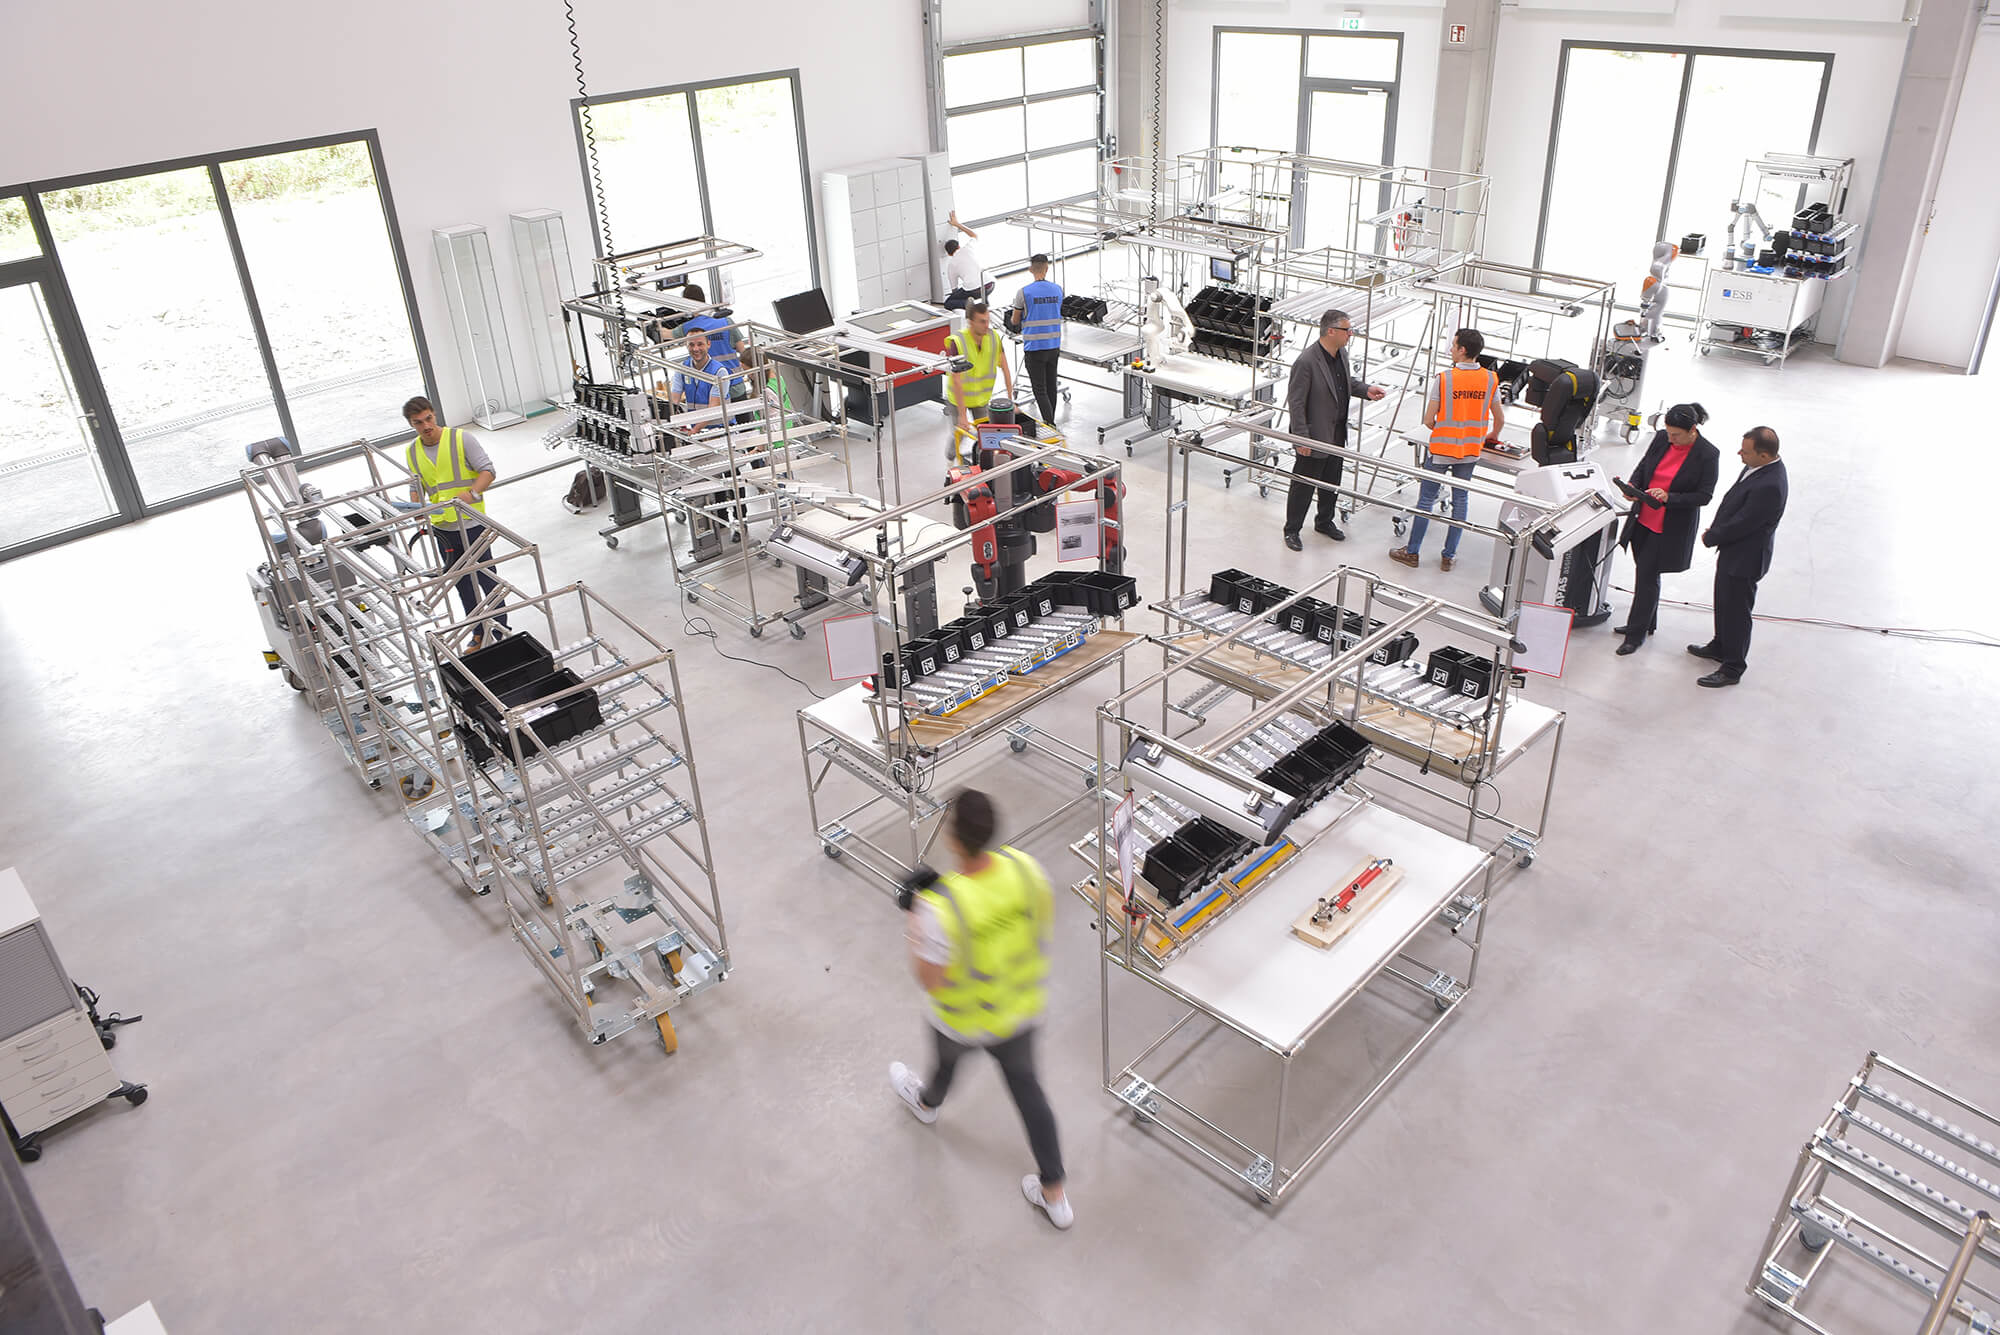 Mensch-Maschine-Kollaboration im Wer150, der Fabrik auf dem Campus